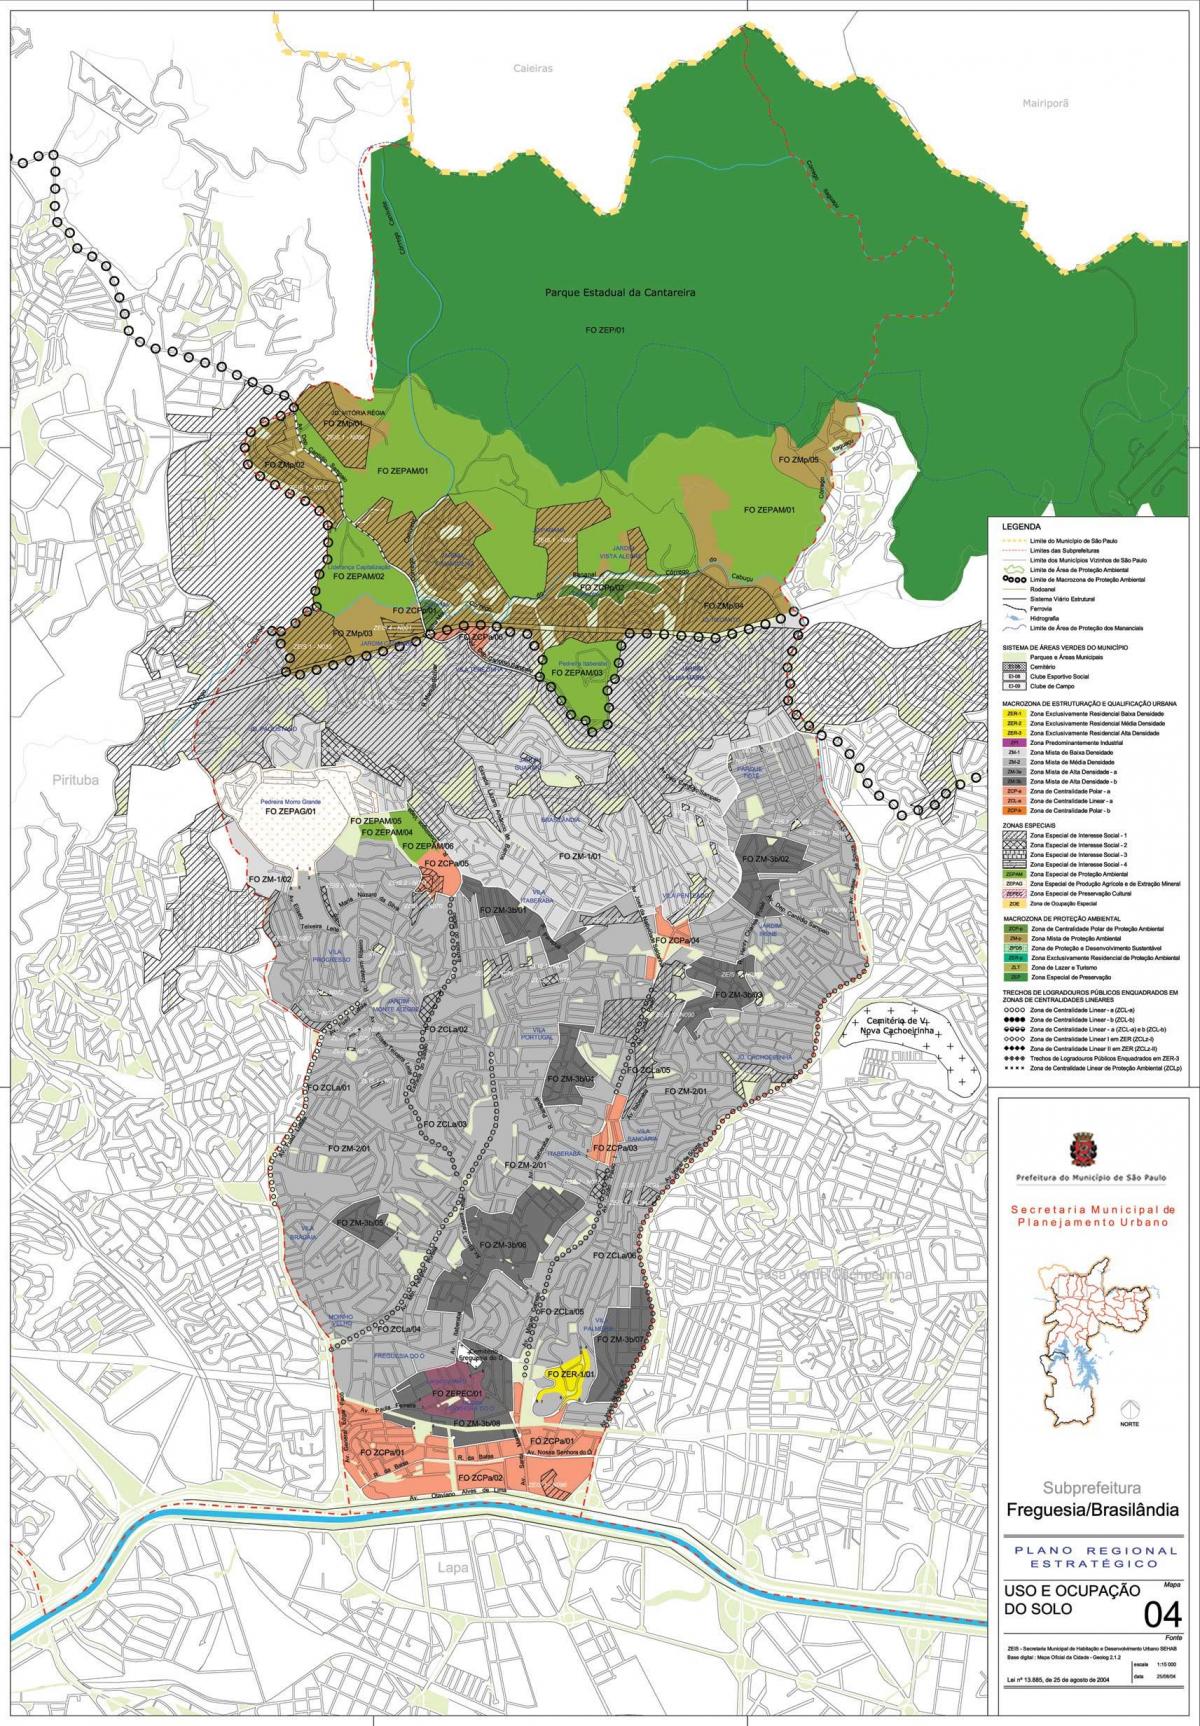 Térkép Freguesia tenni Ó São Paulo - Foglalkozás a talaj